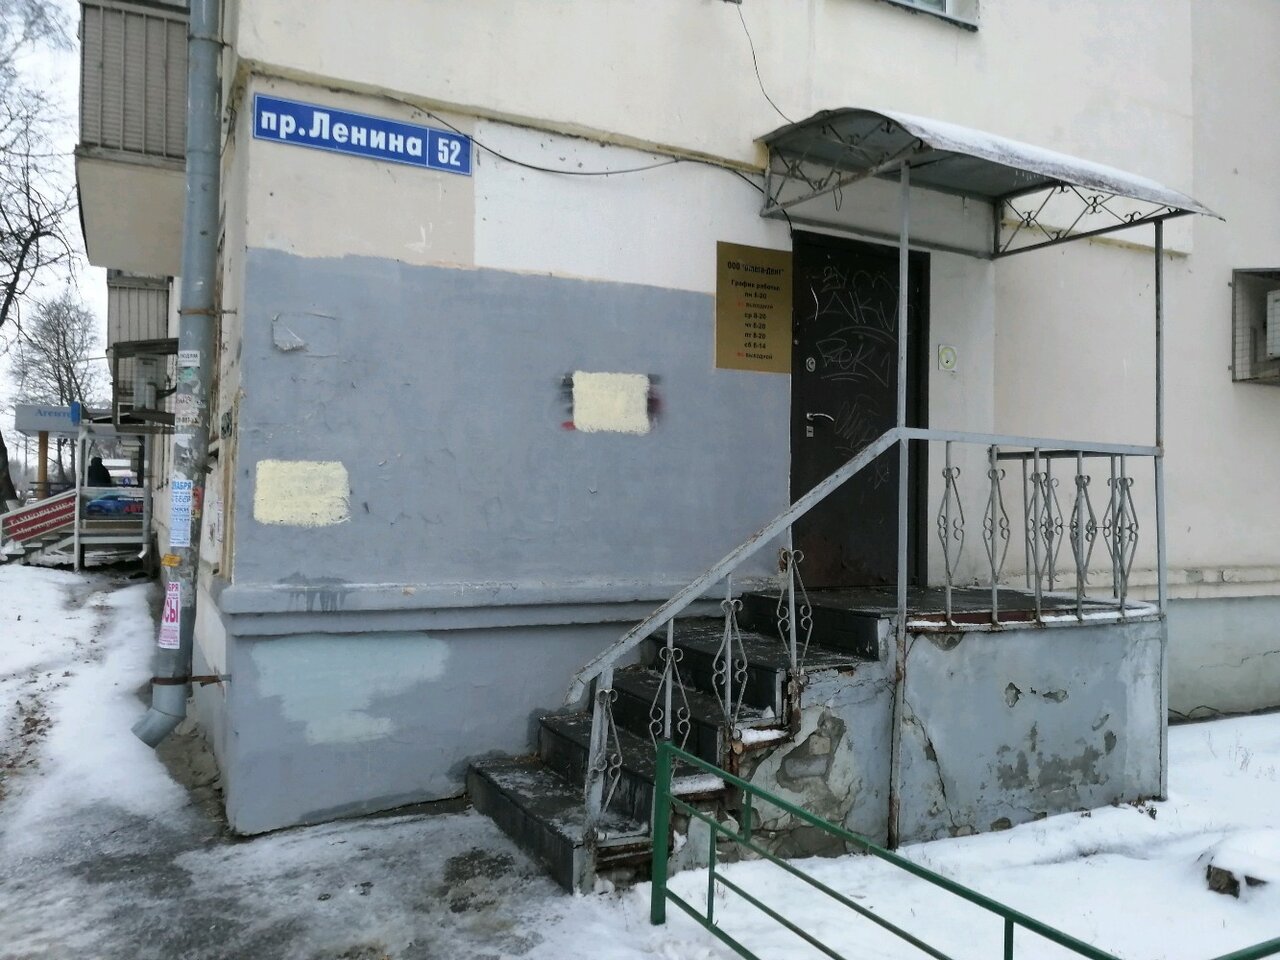 Стоматологическая клиника Омега-Дент, Нижний Новгород, пр. Ленина, 52